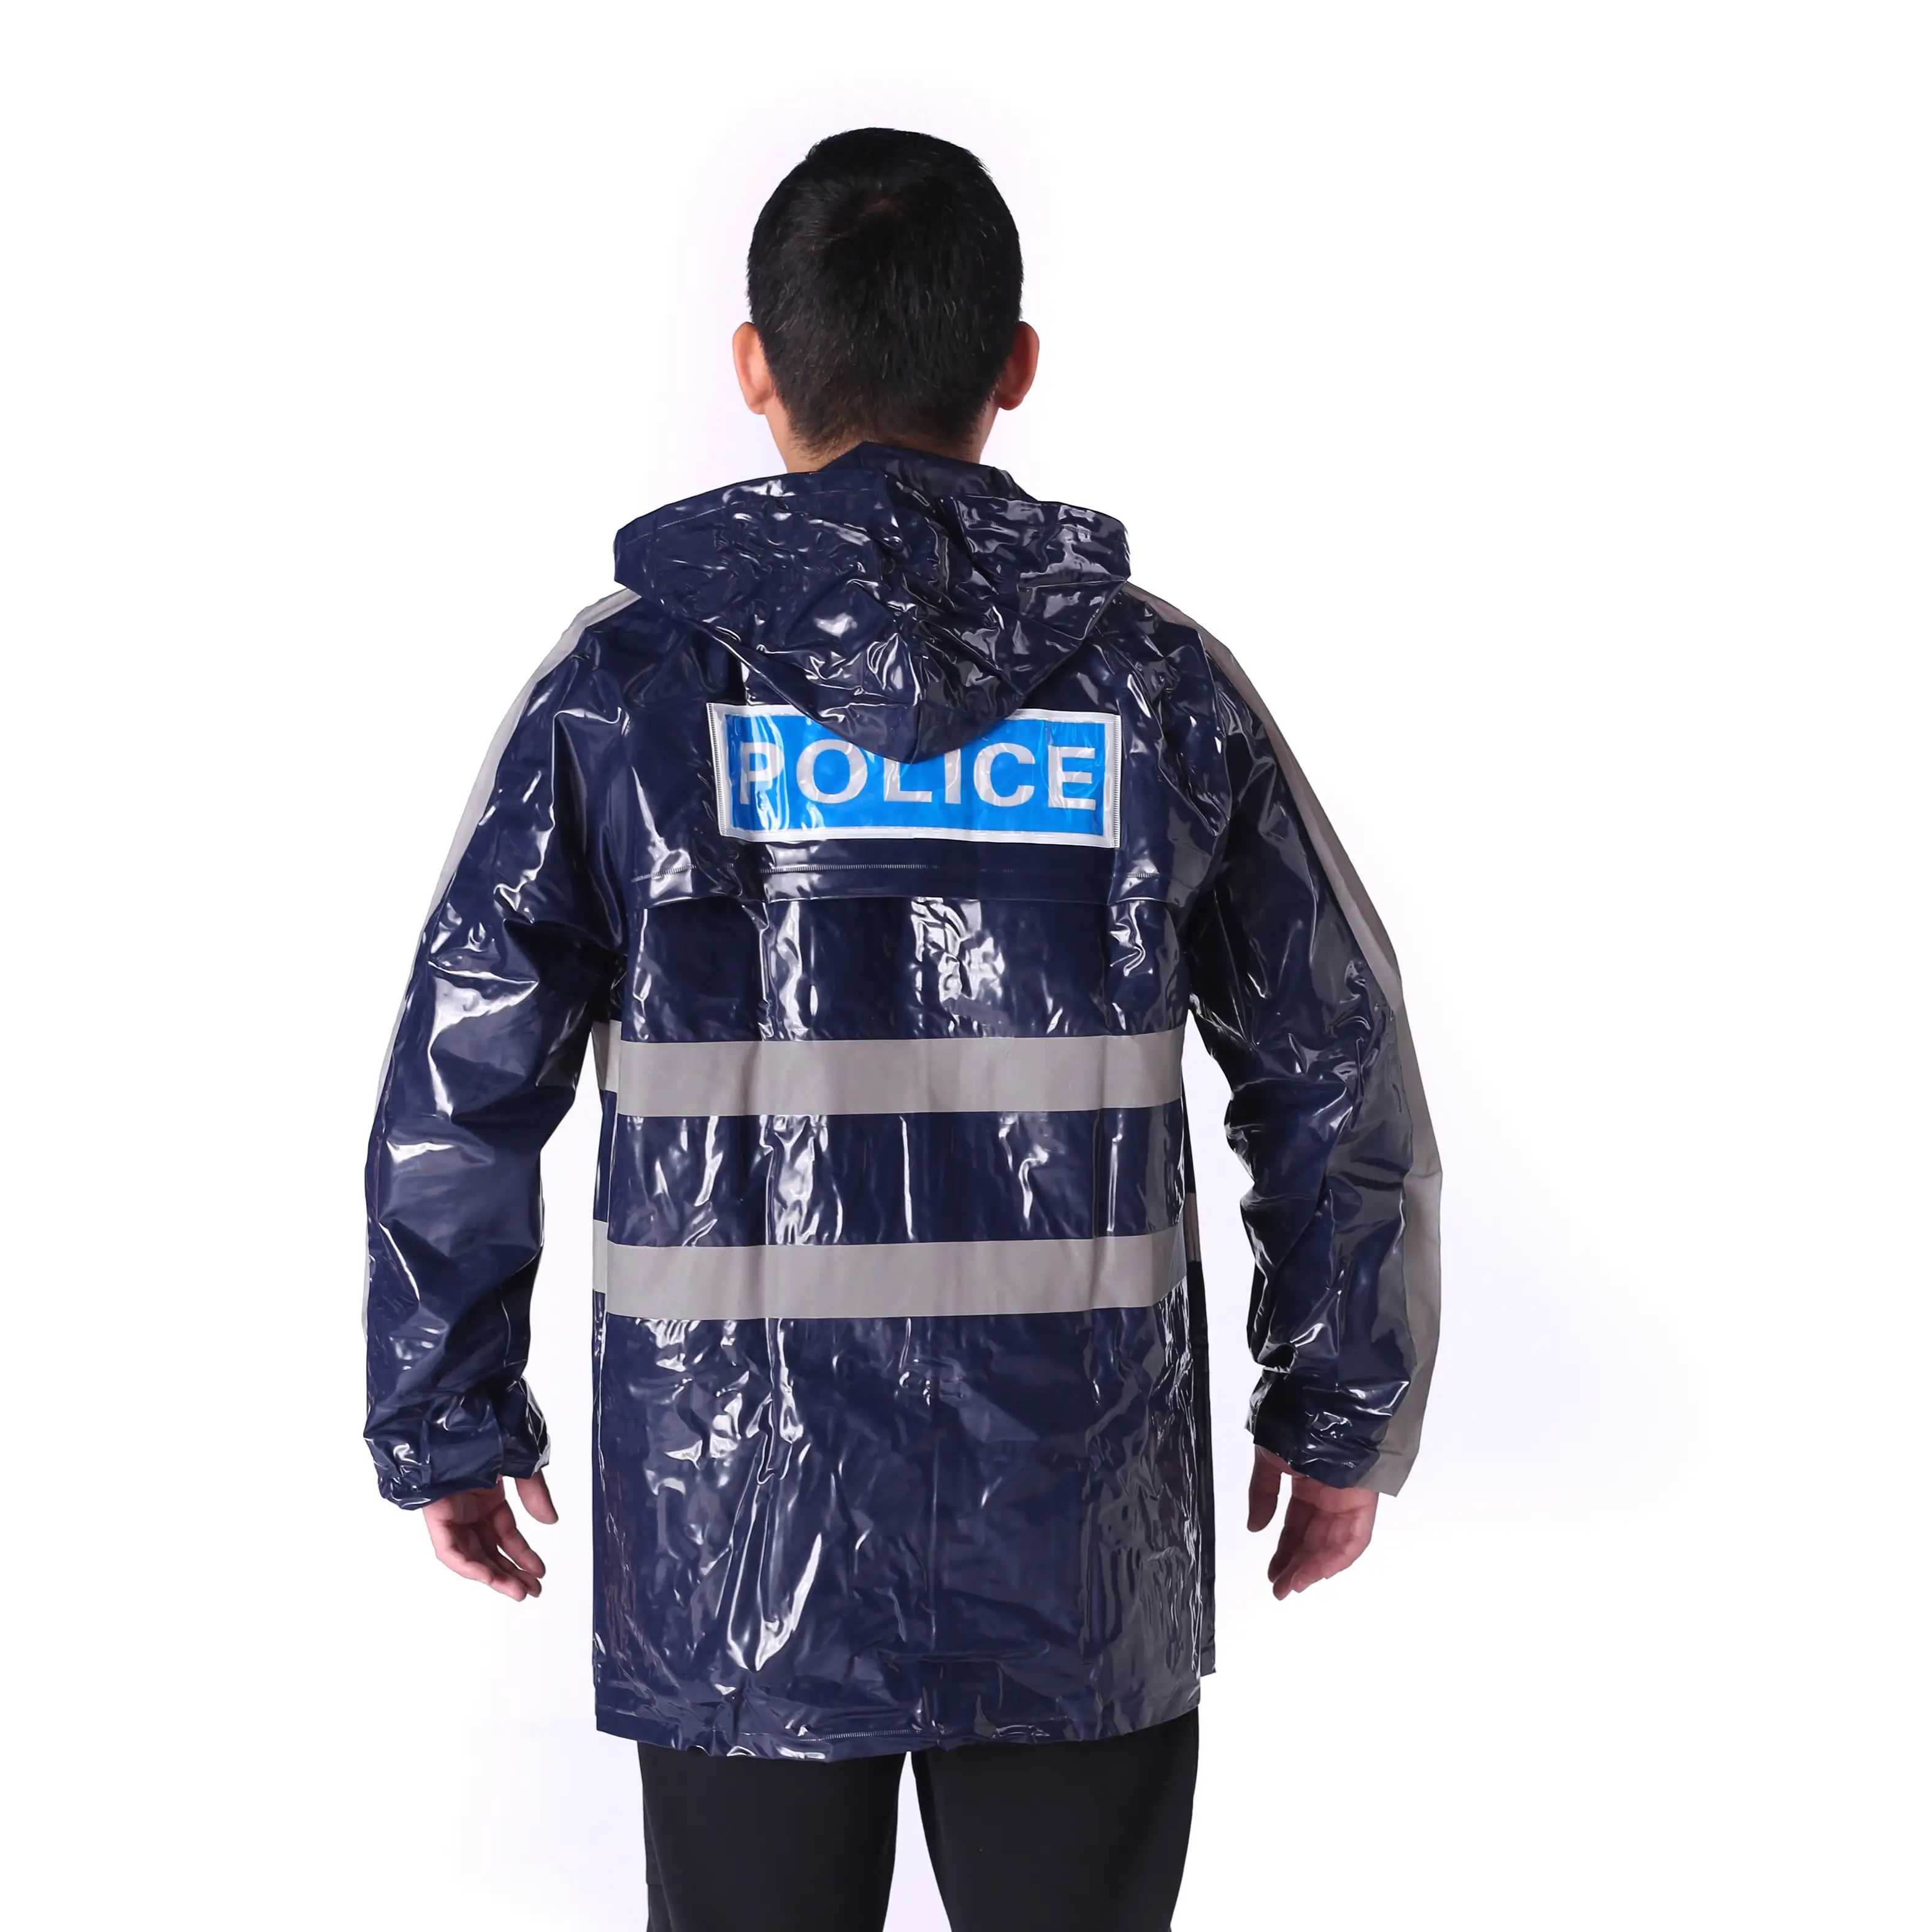 عالية الجودة دائم معطف واق من المطر مخصص الشرطة للماء معطف واقي من المطر للرجال